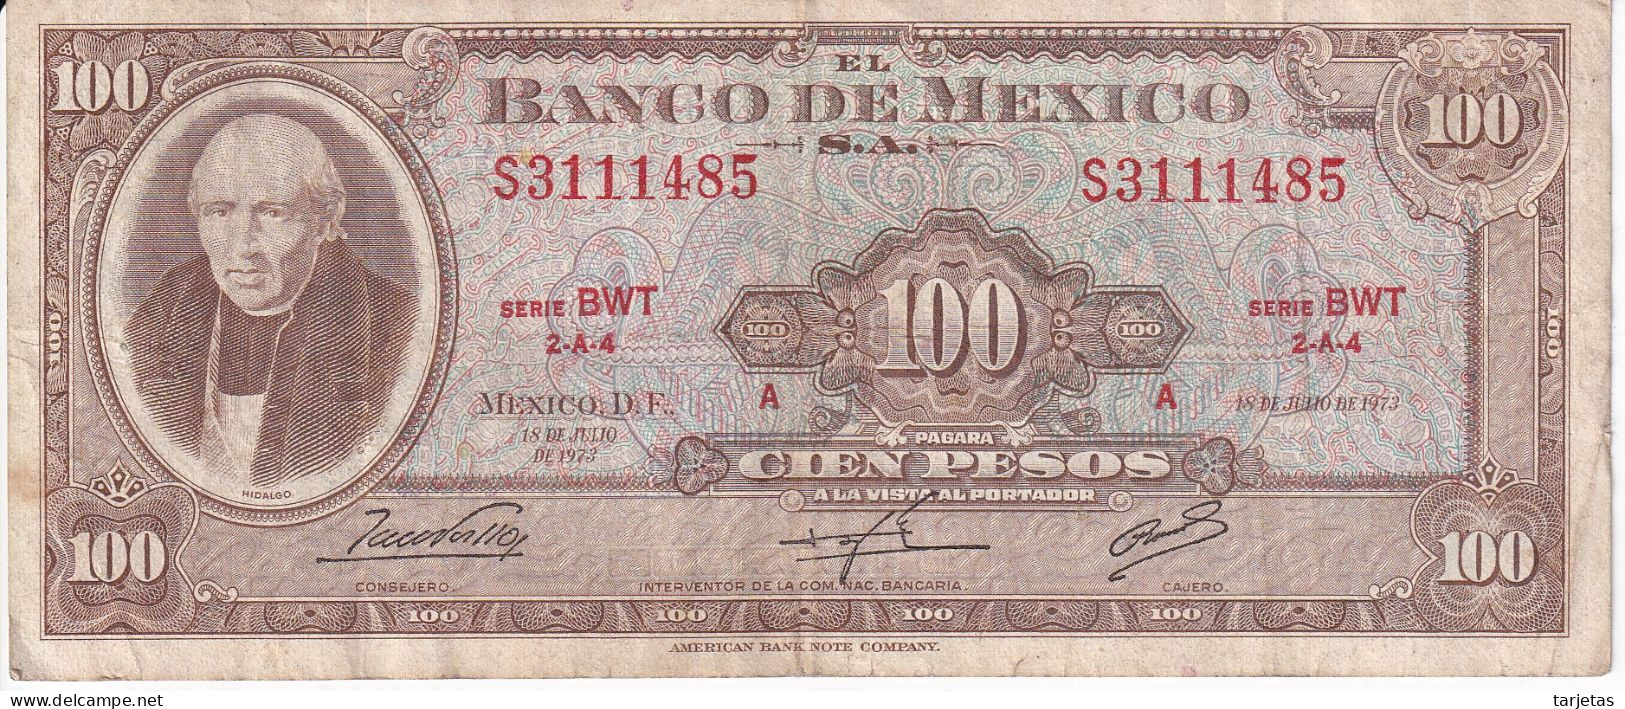 BILLETE DE MEXICO DE 100 PESOS DEL AÑO 1973 DIFERENTES FIRMAS (BANKNOTE) - Mexiko